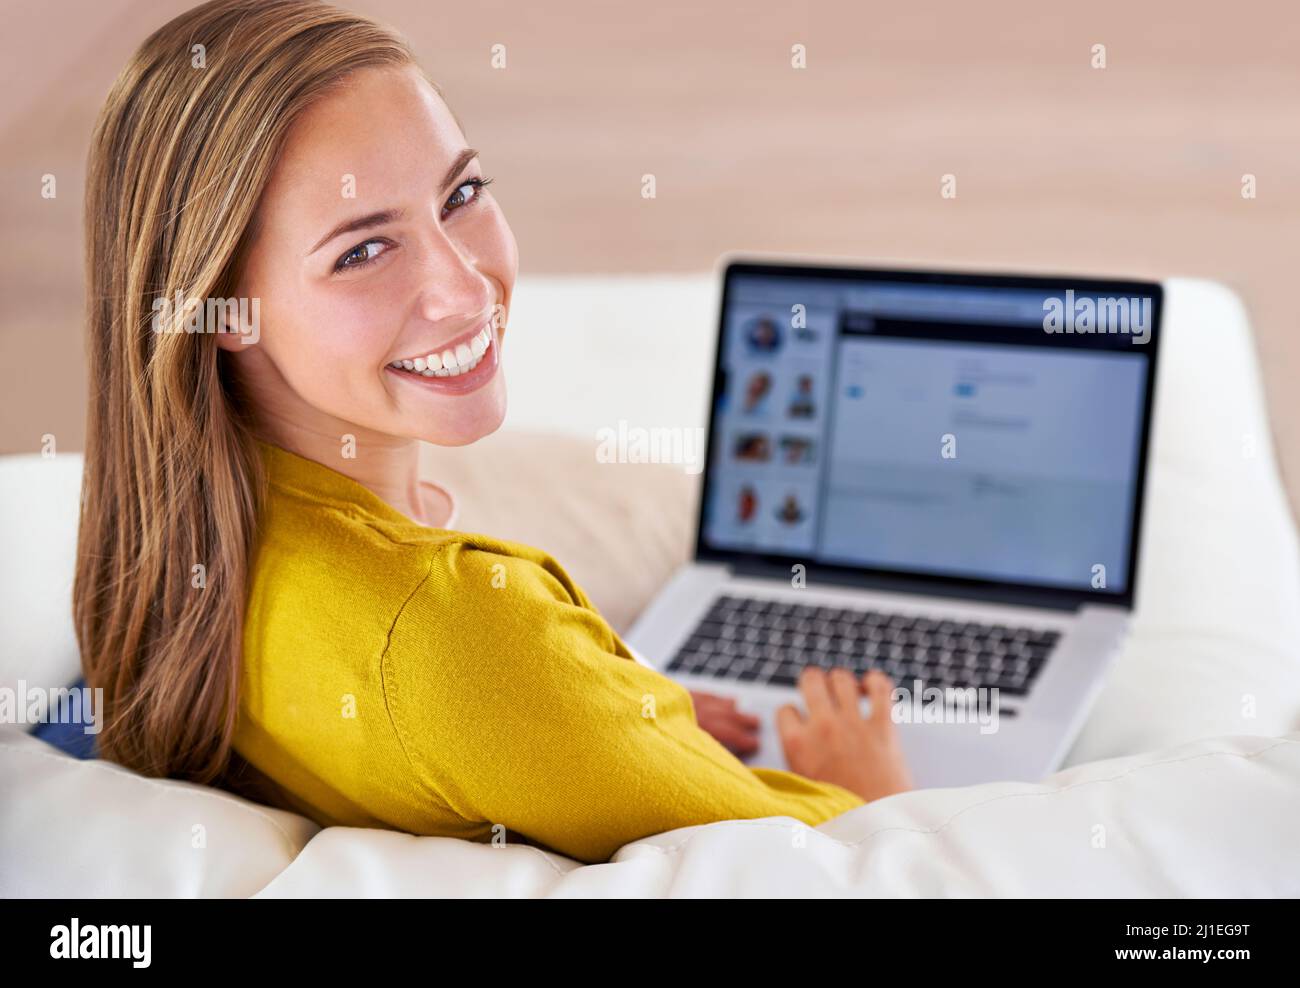 Navigare sul Web il giorno della sua partenza. Ritratto di una giovane donna attraente che usa il suo computer portatile mentre si siede sul divano a casa. Foto Stock